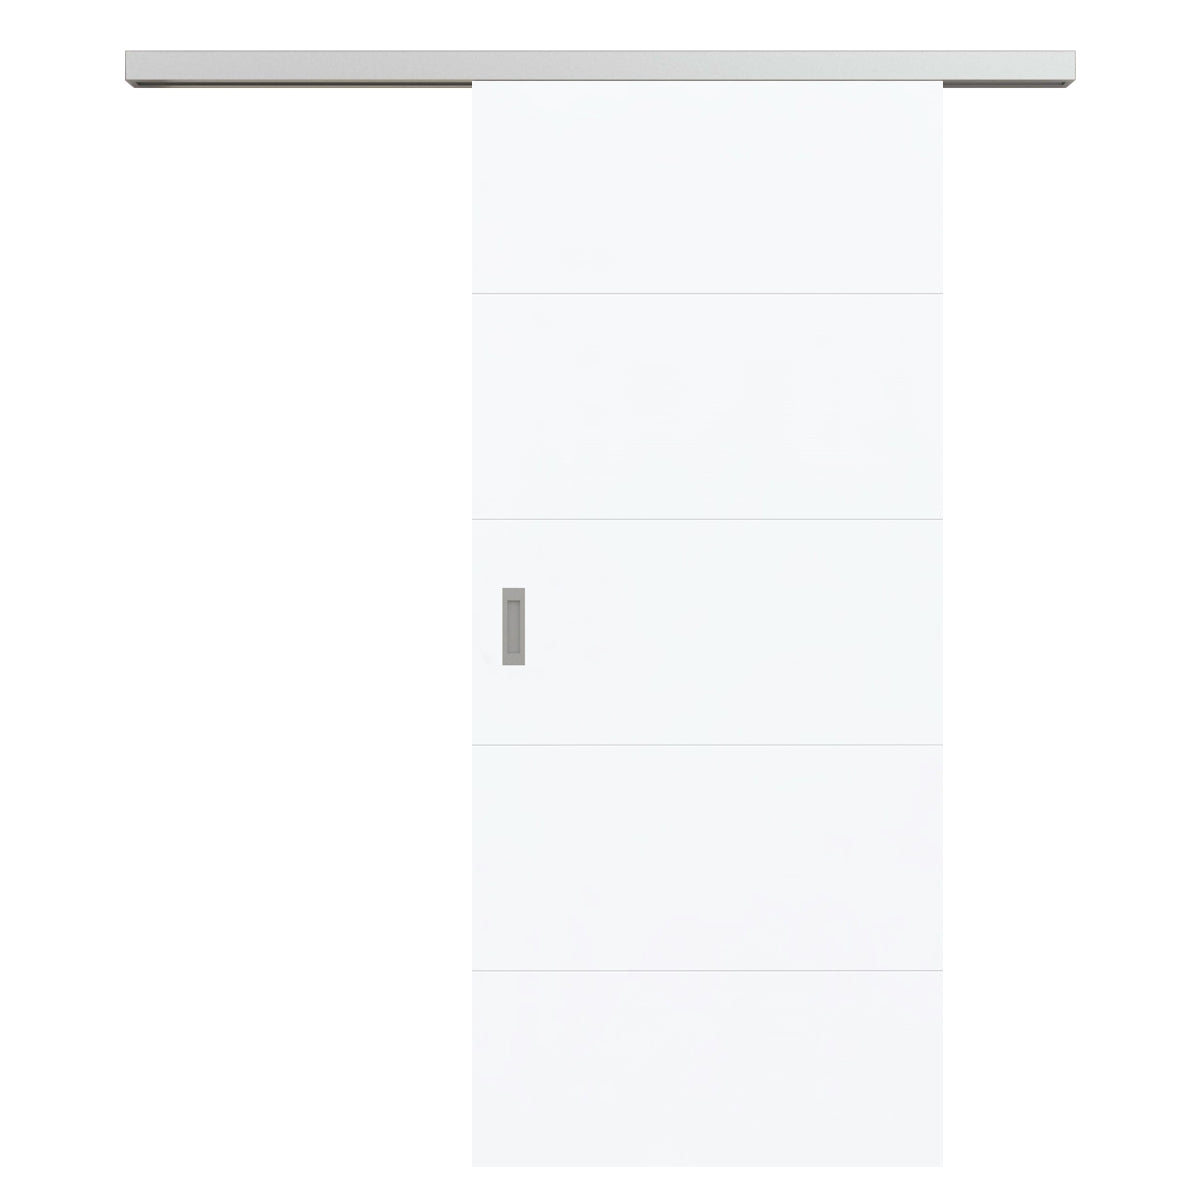 Schiebetür für Set mit Edelstahllaufkasten brillant-weiß modern mit 4 Rillen - Modell Designtür Q43